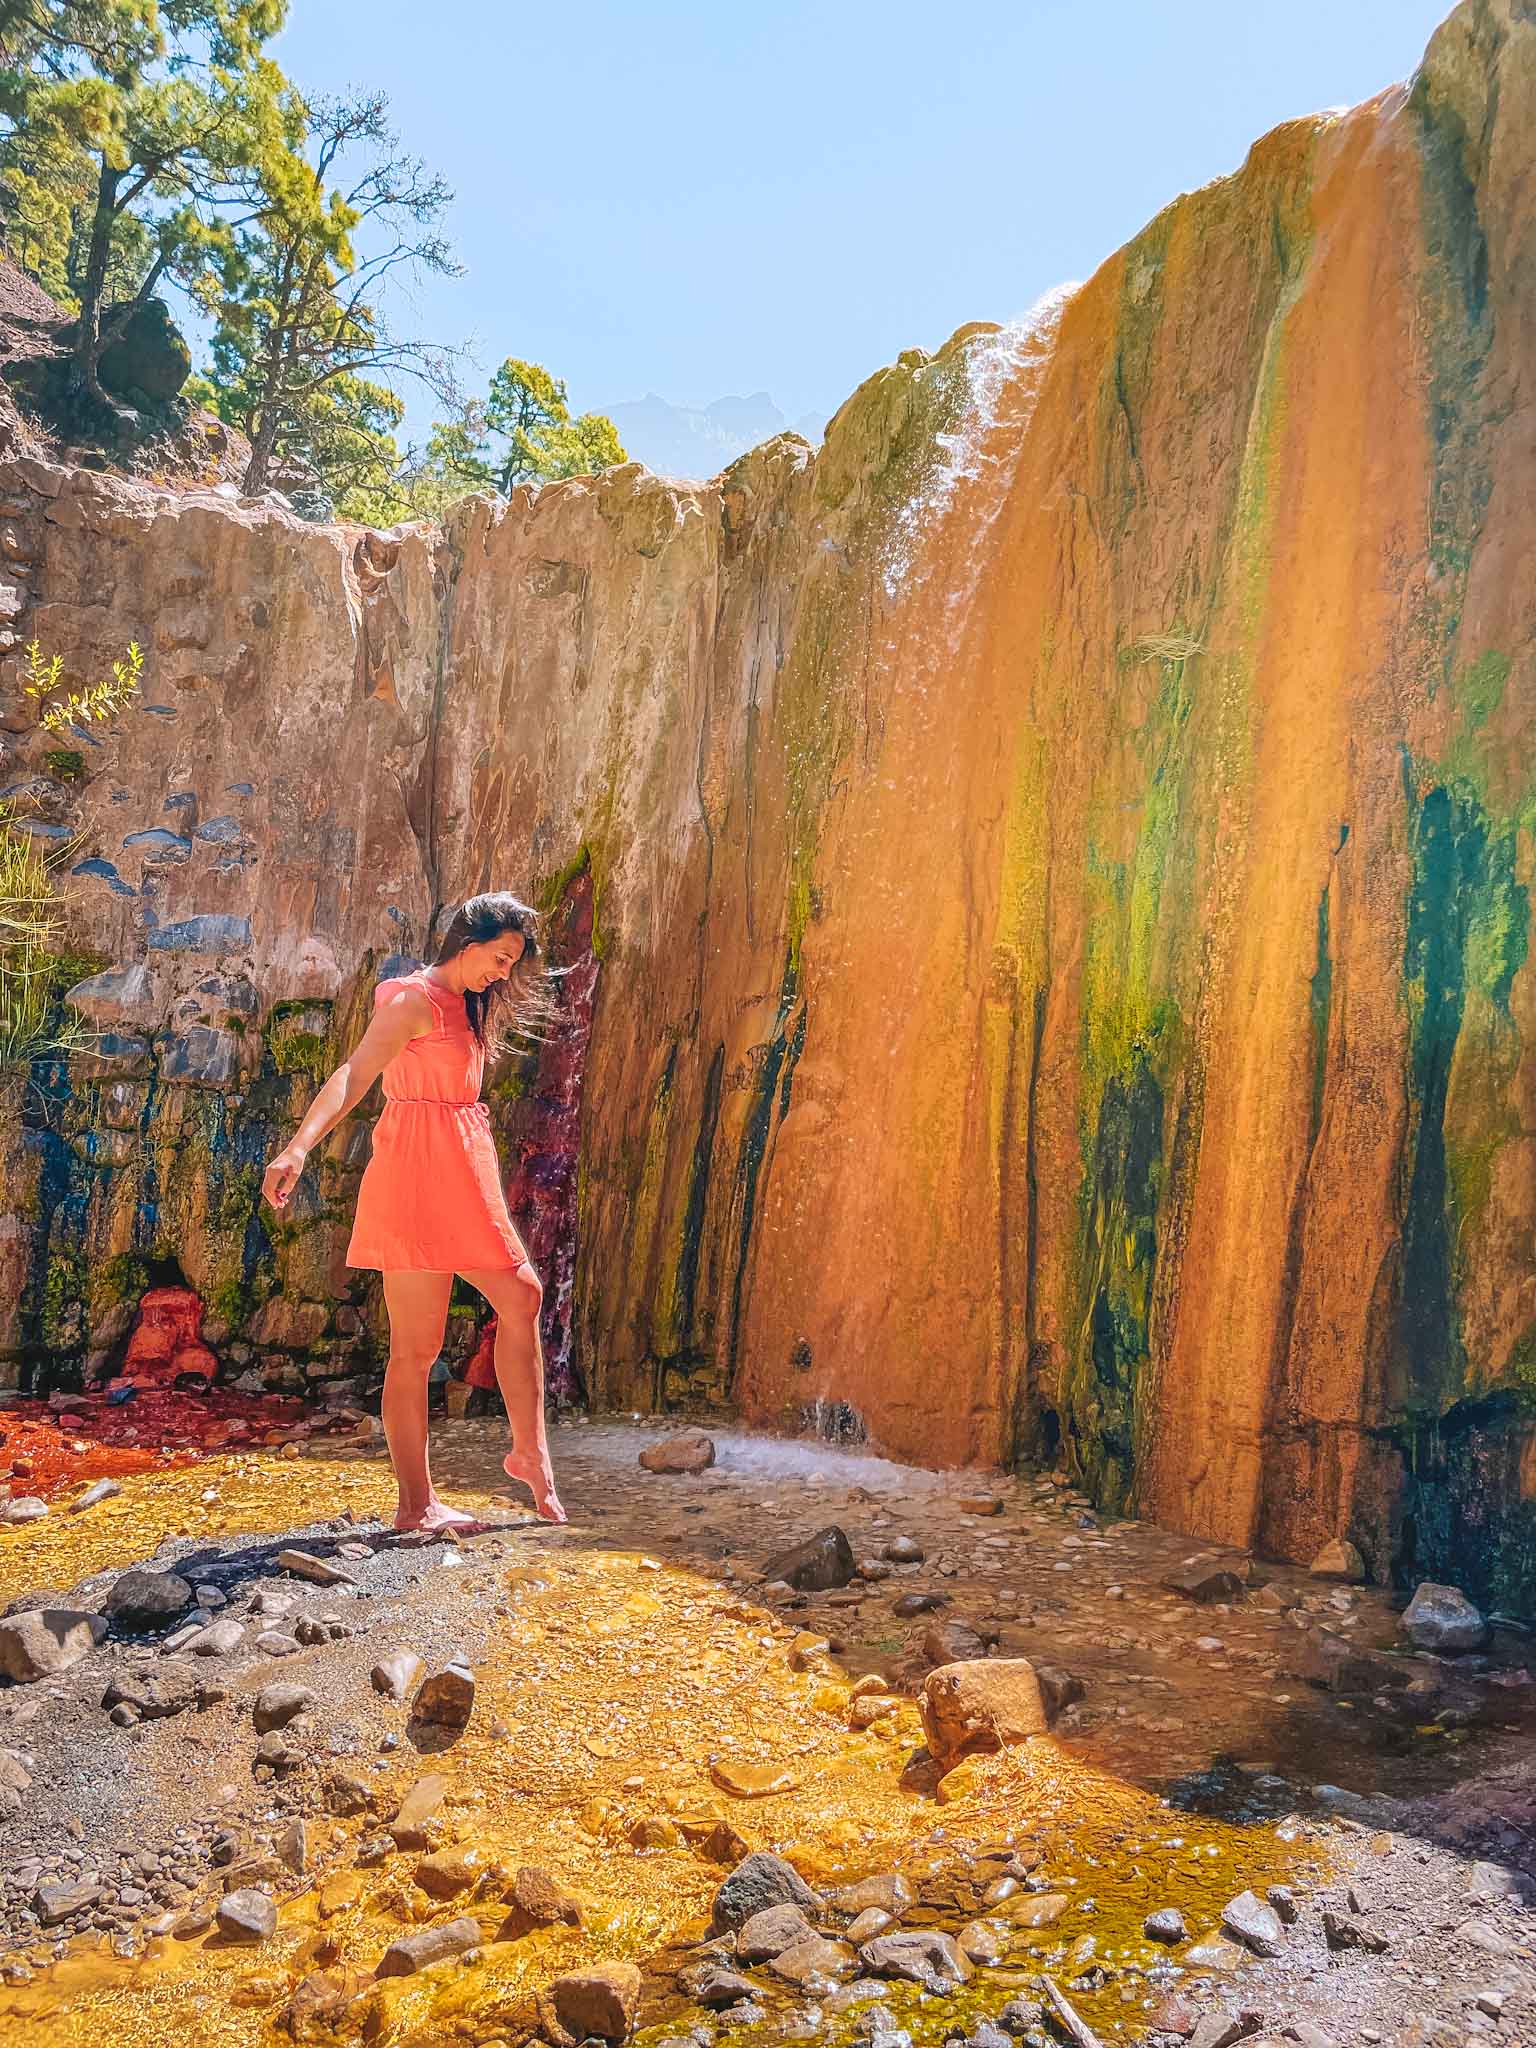 Most instagrammable places in La Palma Canary Islands - Cascada de los Colores